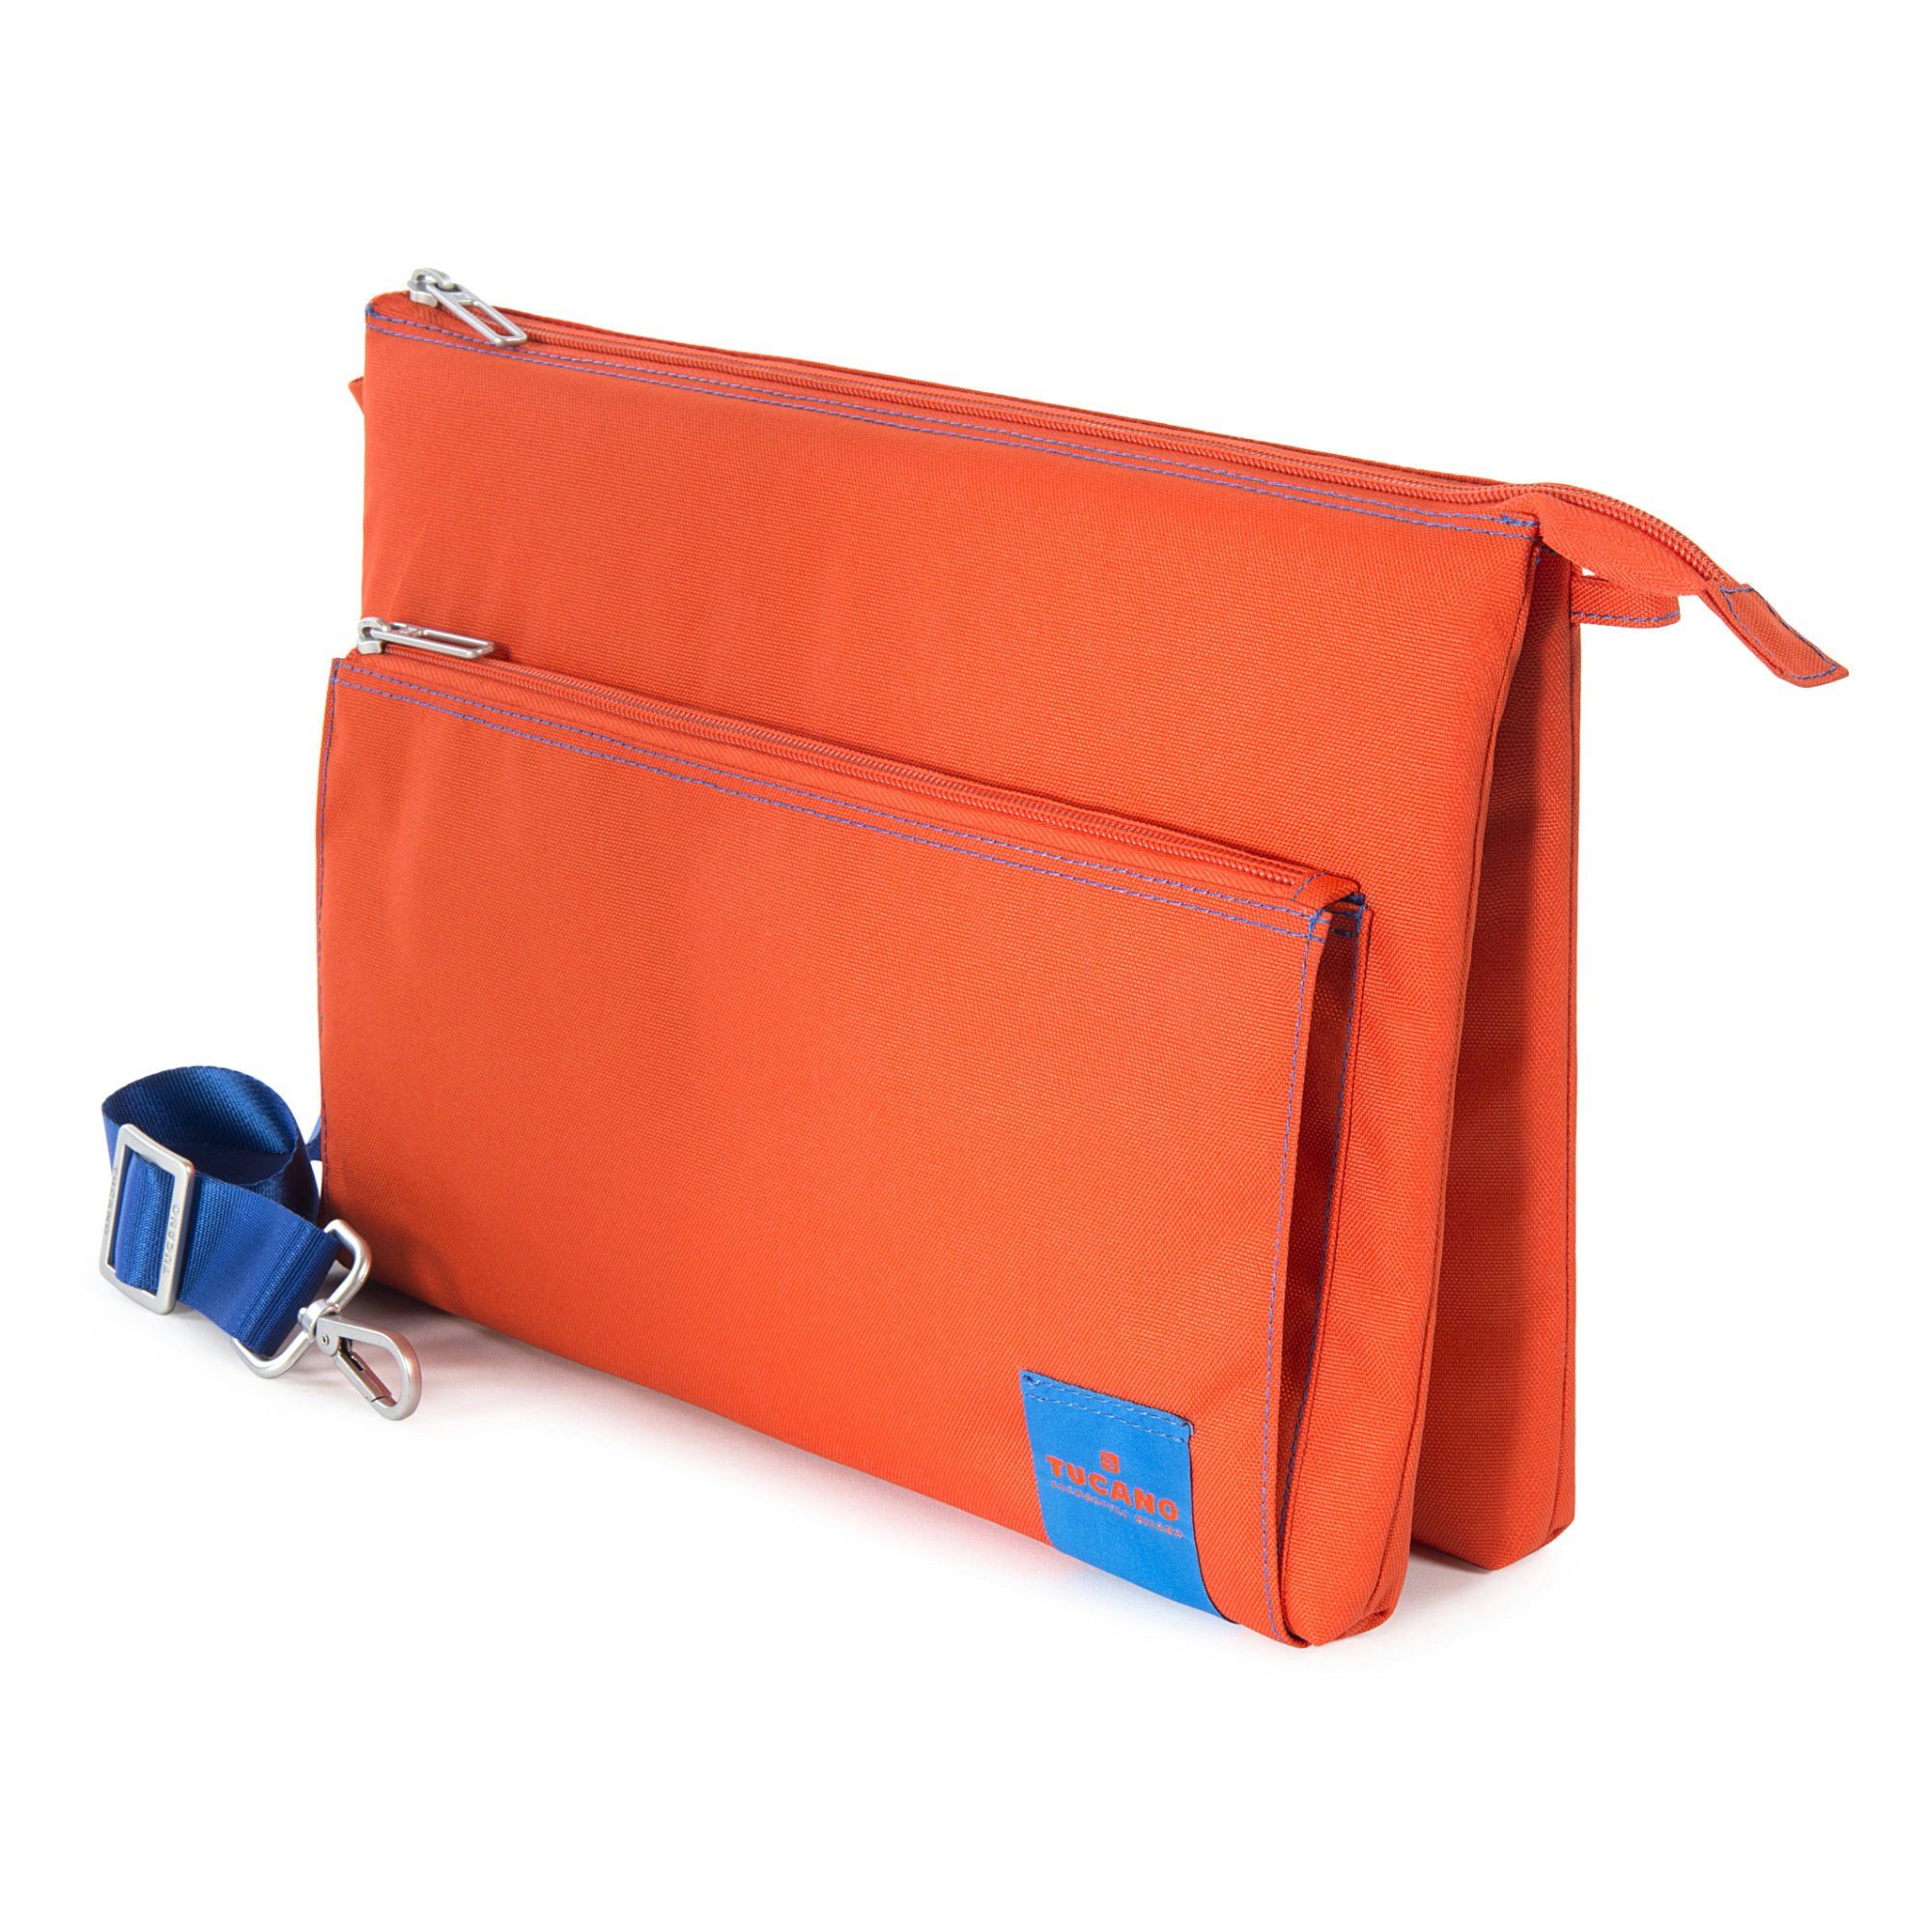 Tucano Laptoptasche Tucano Lampo - Multifunktionale Tasche für Notebook /  Tablet / Smartphone von 7 bis 13 Zoll - Orange